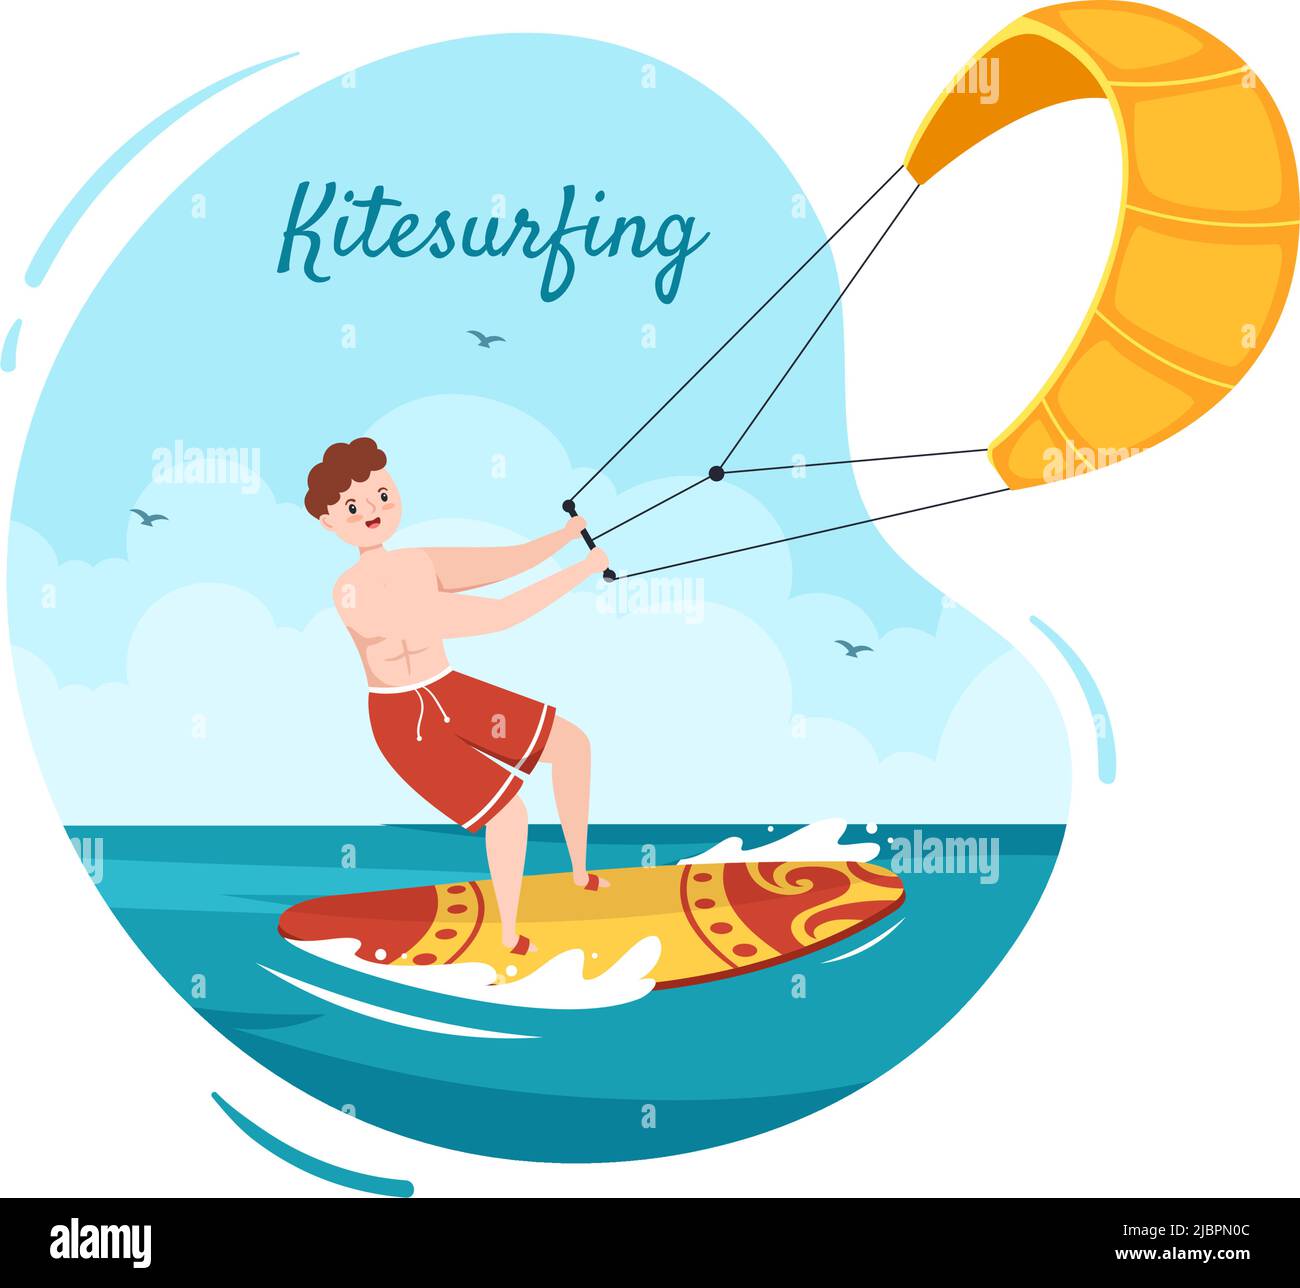 Kitesurfing d'été des activités de sports nautiques Illustration du dessin animé avec un grand cerf-volant sur un conseil en style plat Illustration de Vecteur